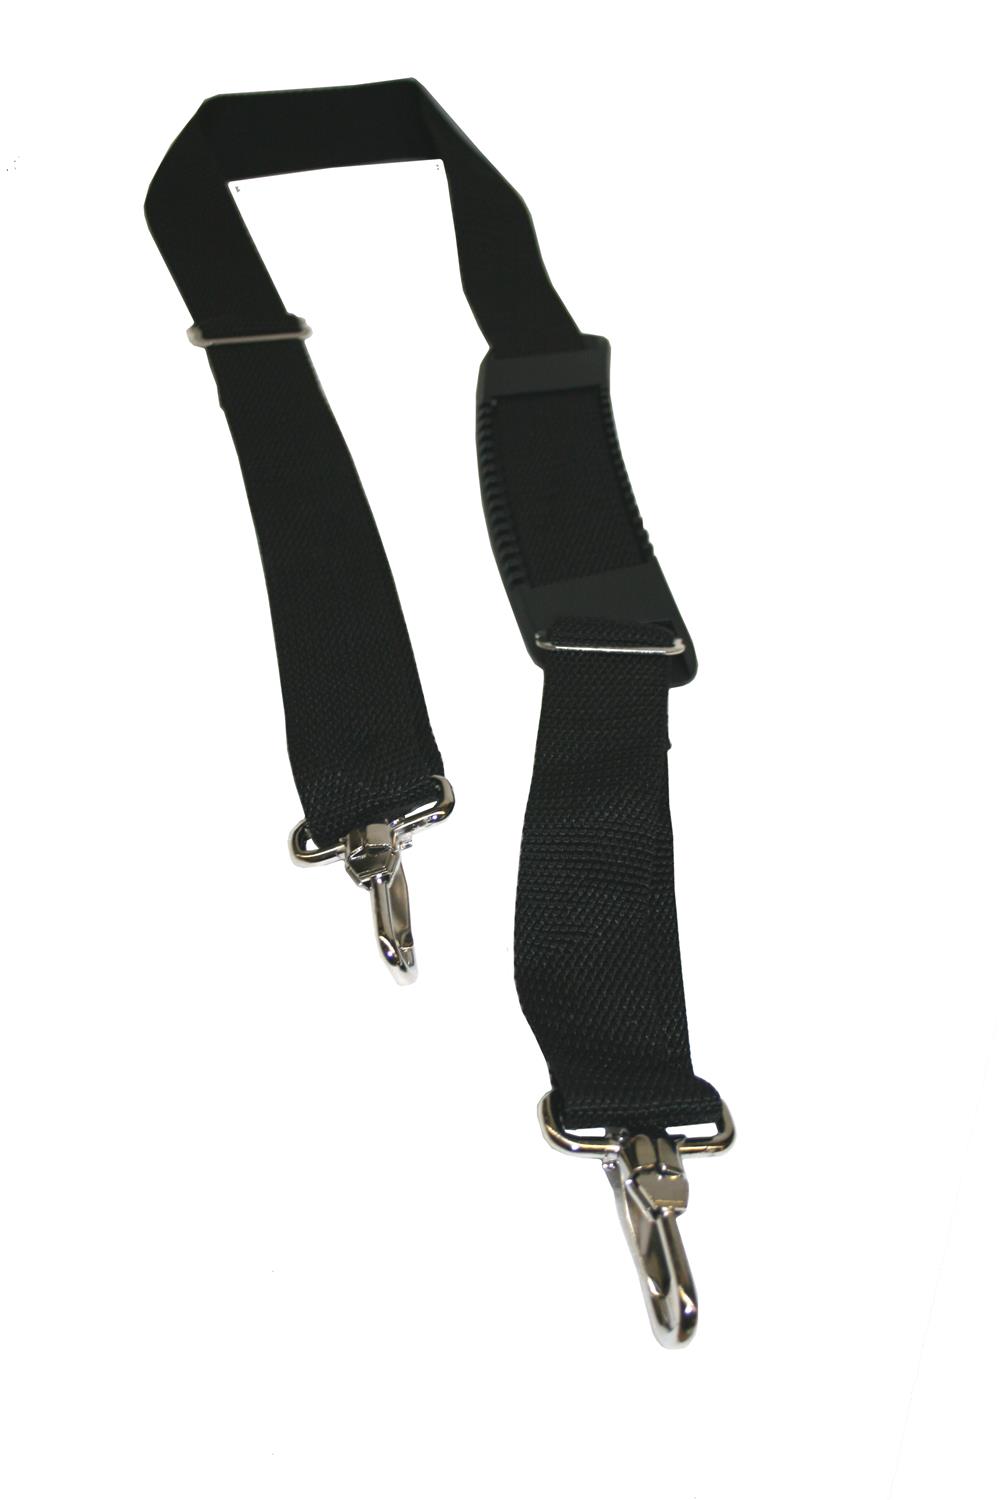 ZINZ Shoulder Strap, 57 Padded Adjustable Shoulder